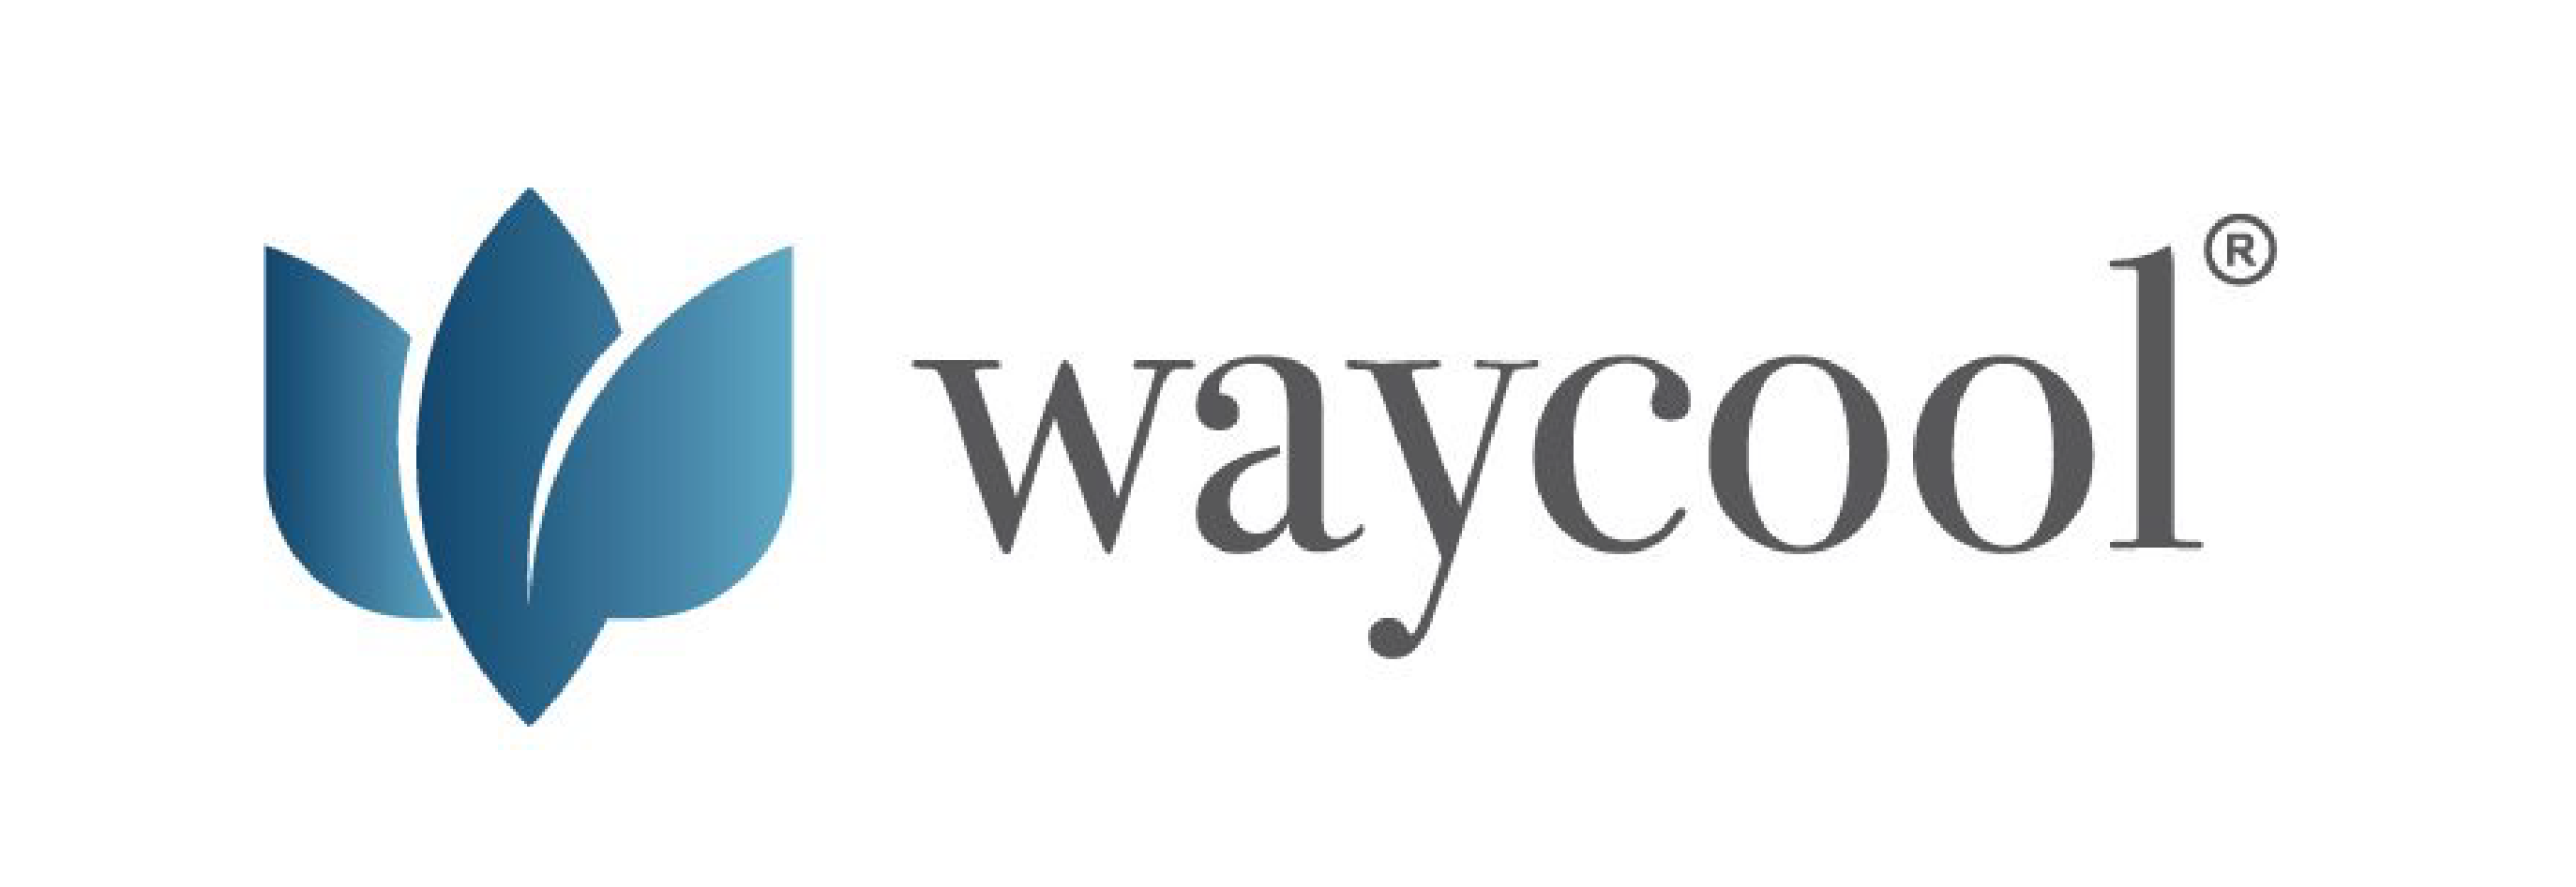 Way Cool logo